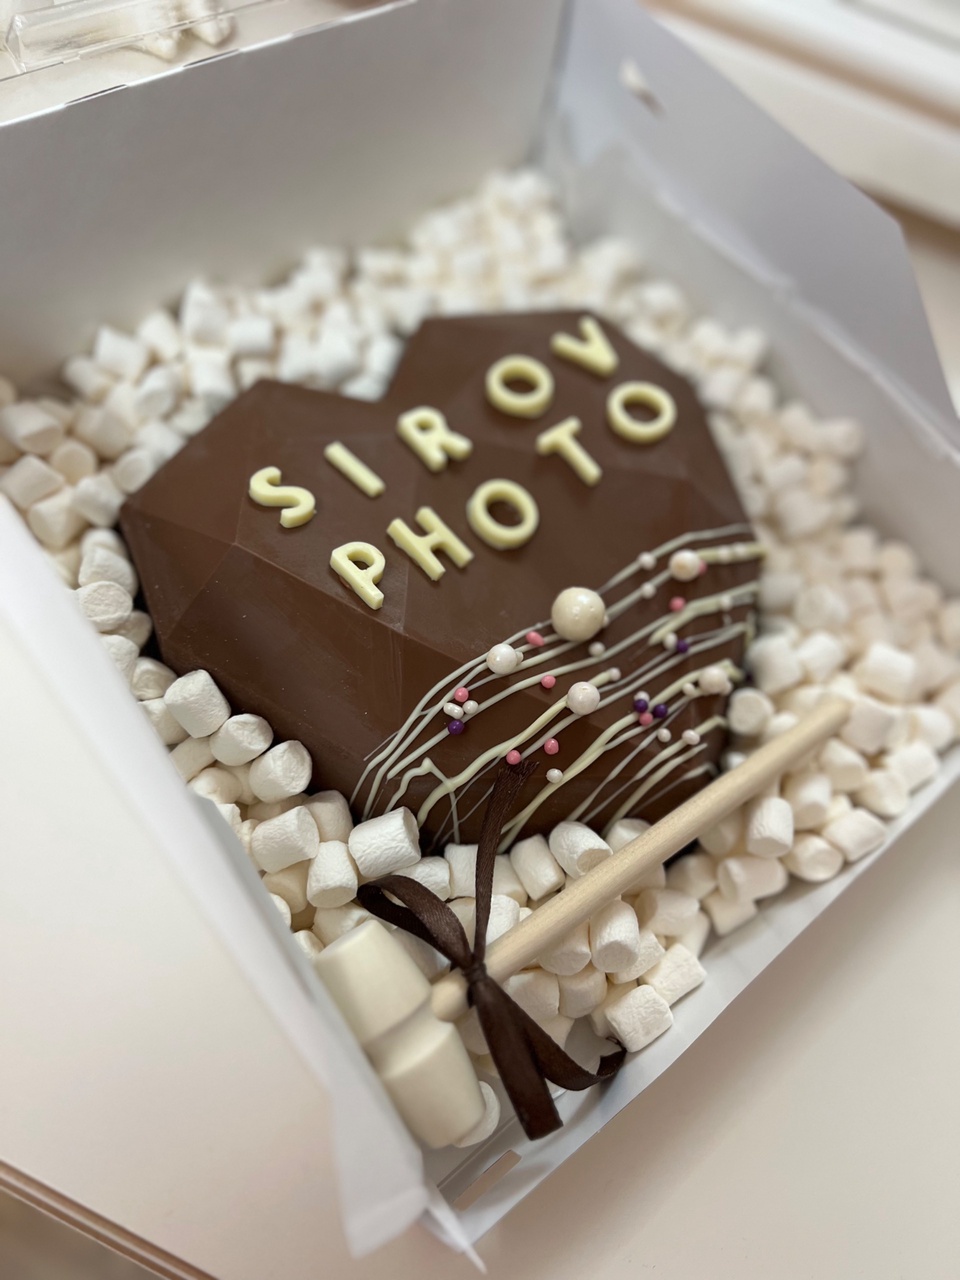 Шоколадная пиньята - 1 800 ₽, заказать онлайн.